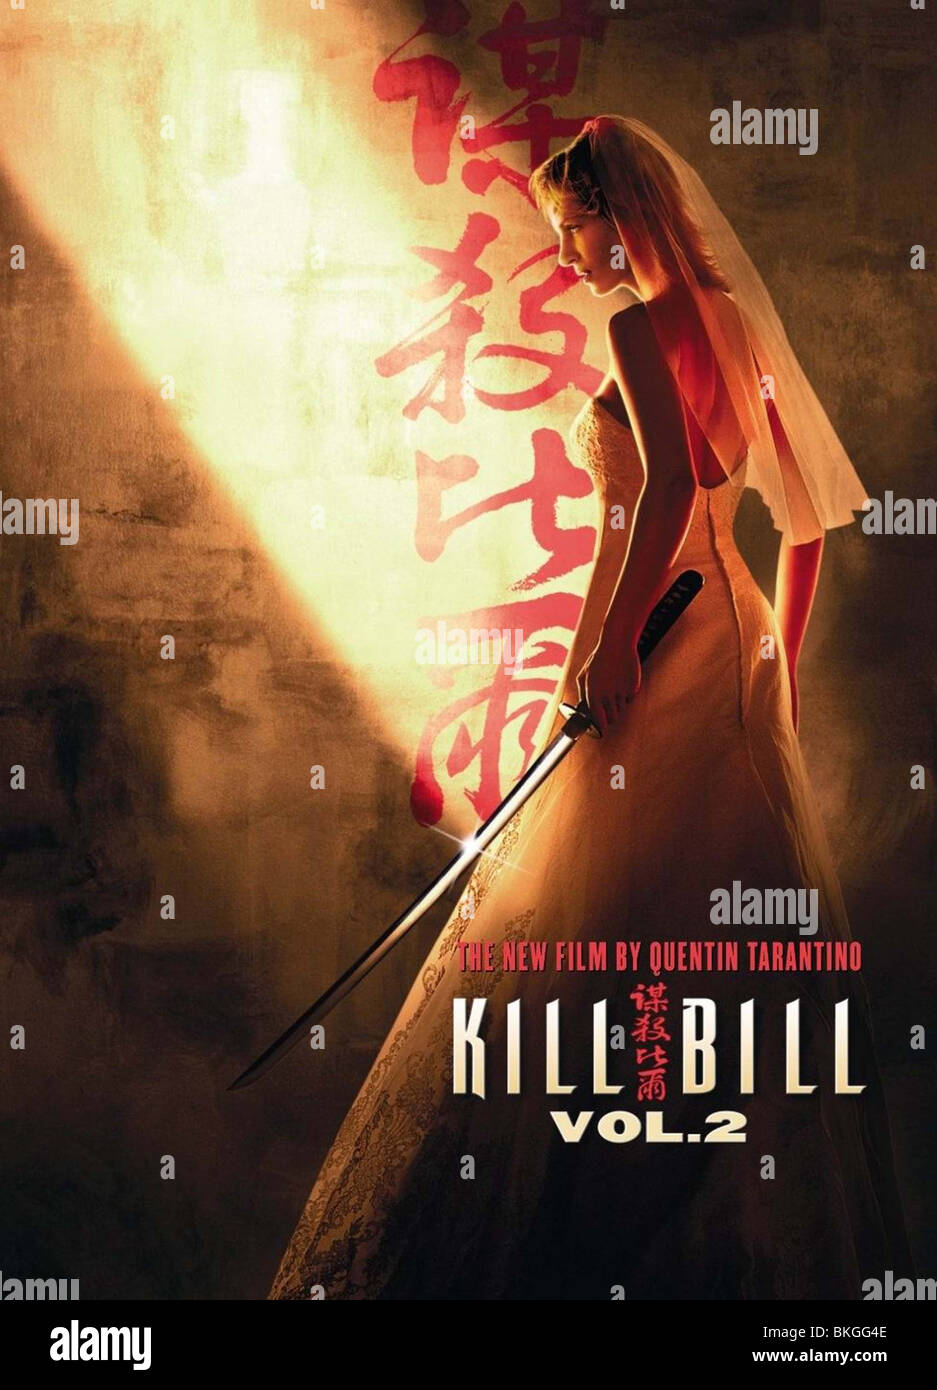 KILL BILL: Volume 2 (2004) POSTER KBL2 002-POST2 Foto stock - Alamy